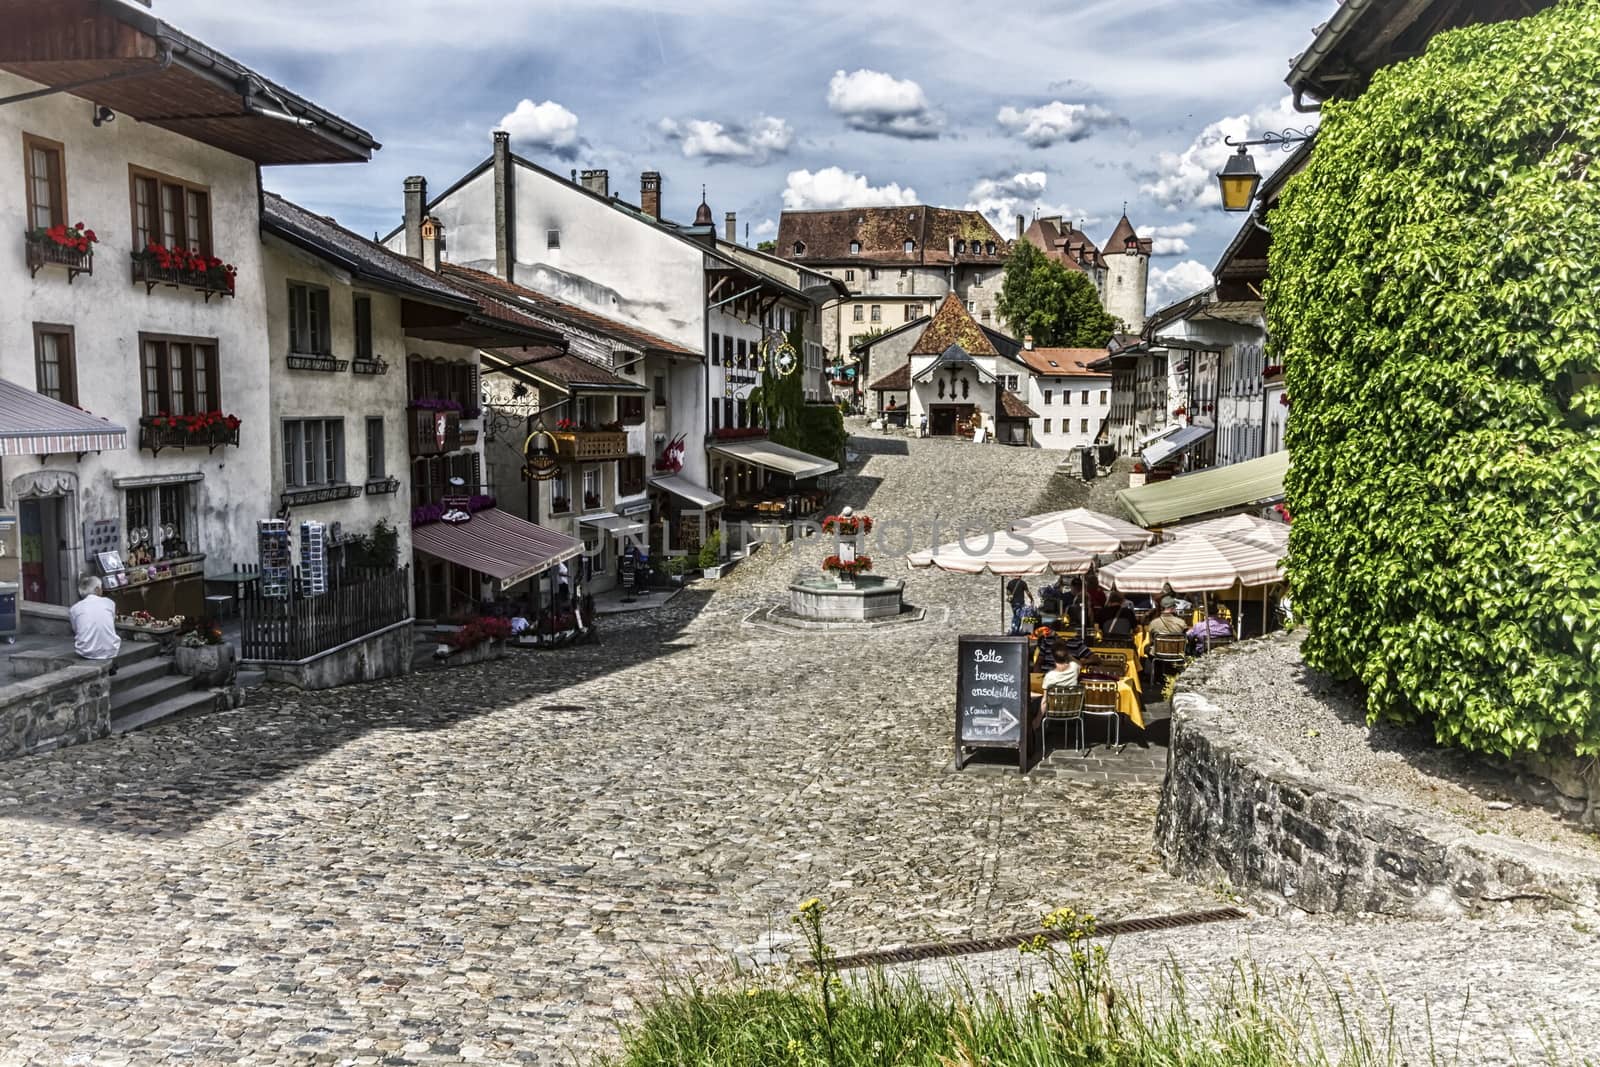 Main street in Gruyeres village, Fribourg, Switzerland by Elenaphotos21